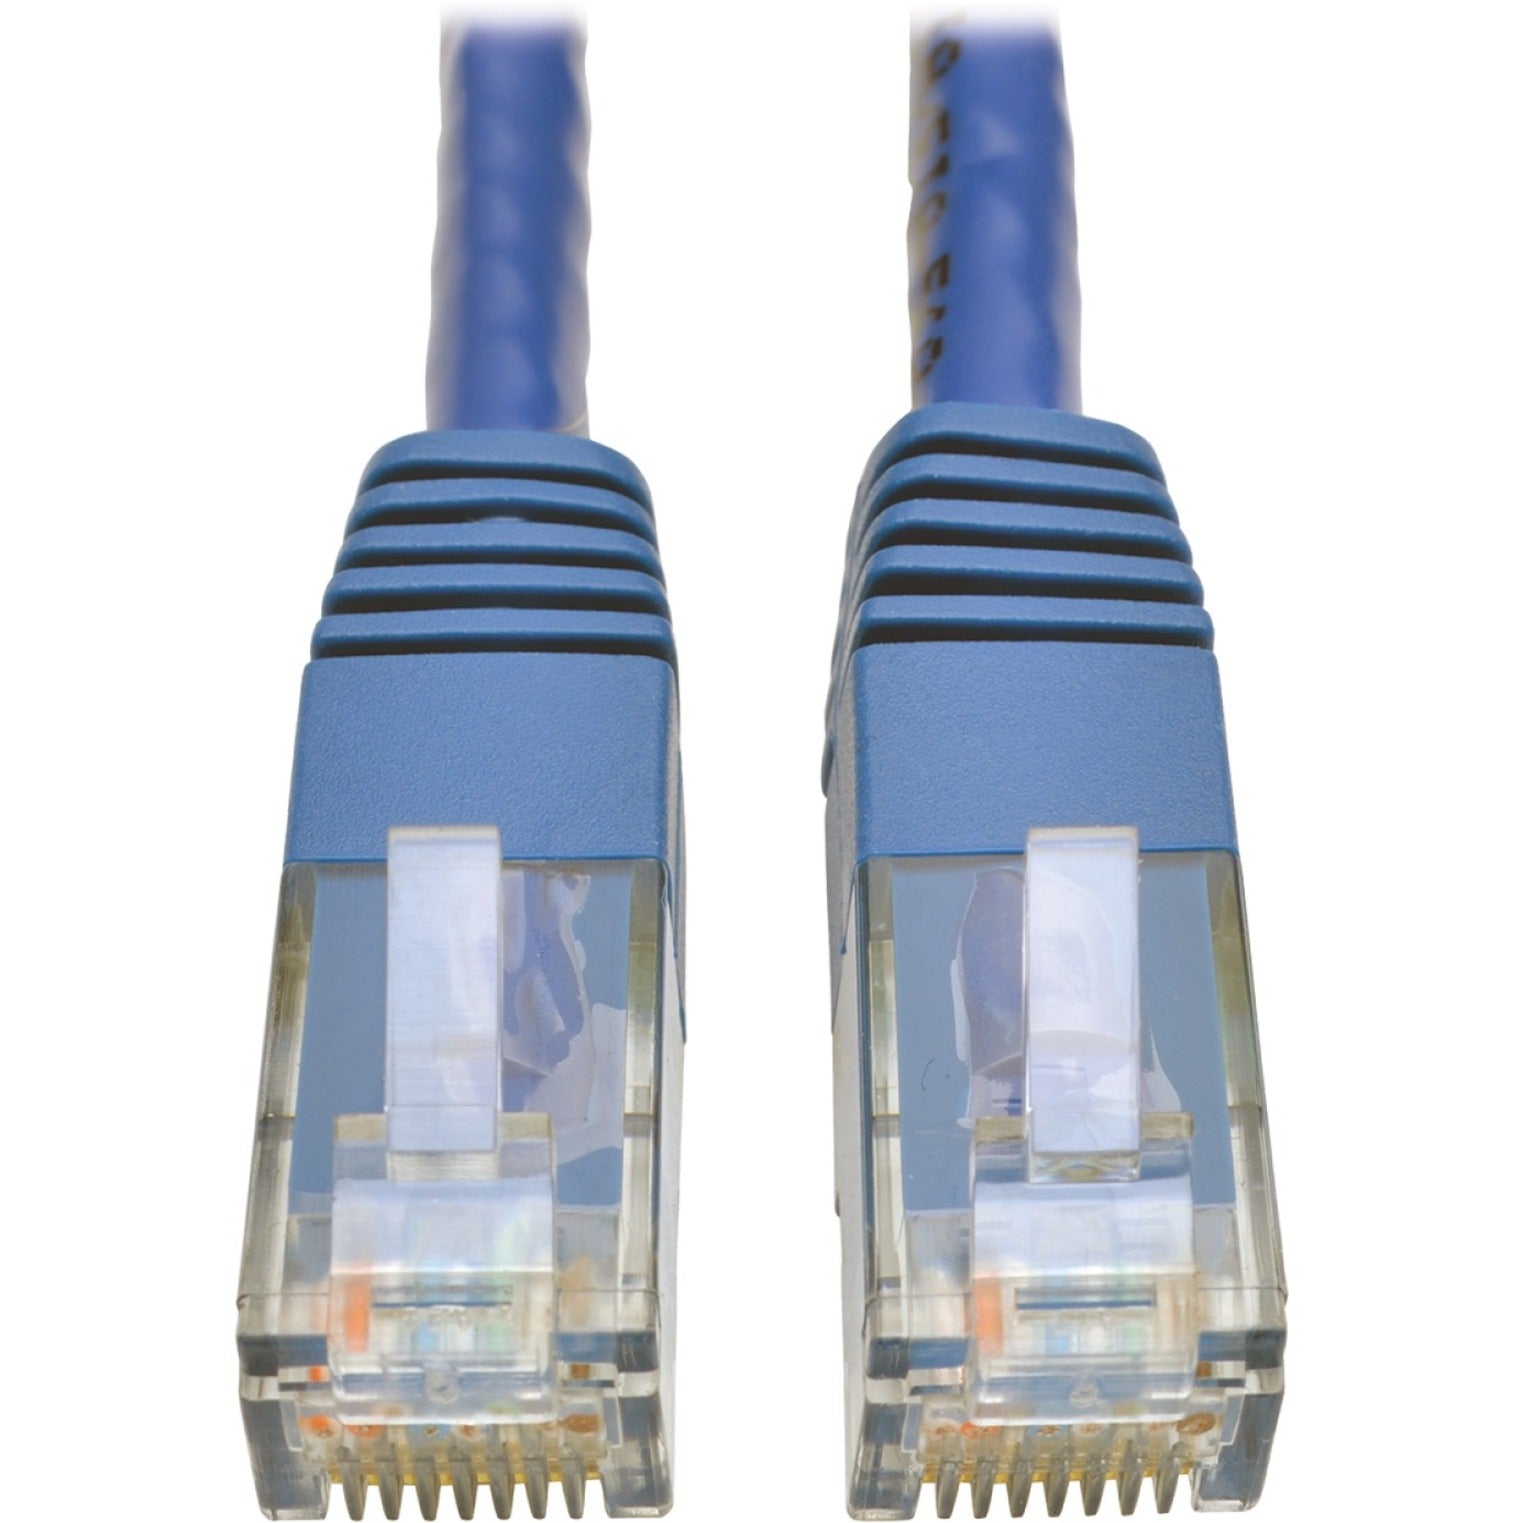 Tripp Lite N200-010-BL Cat6 Gigabit Molded Patch Cable (RJ45 M/M), Blue, 10 ft, Flexible and Stress Resistant